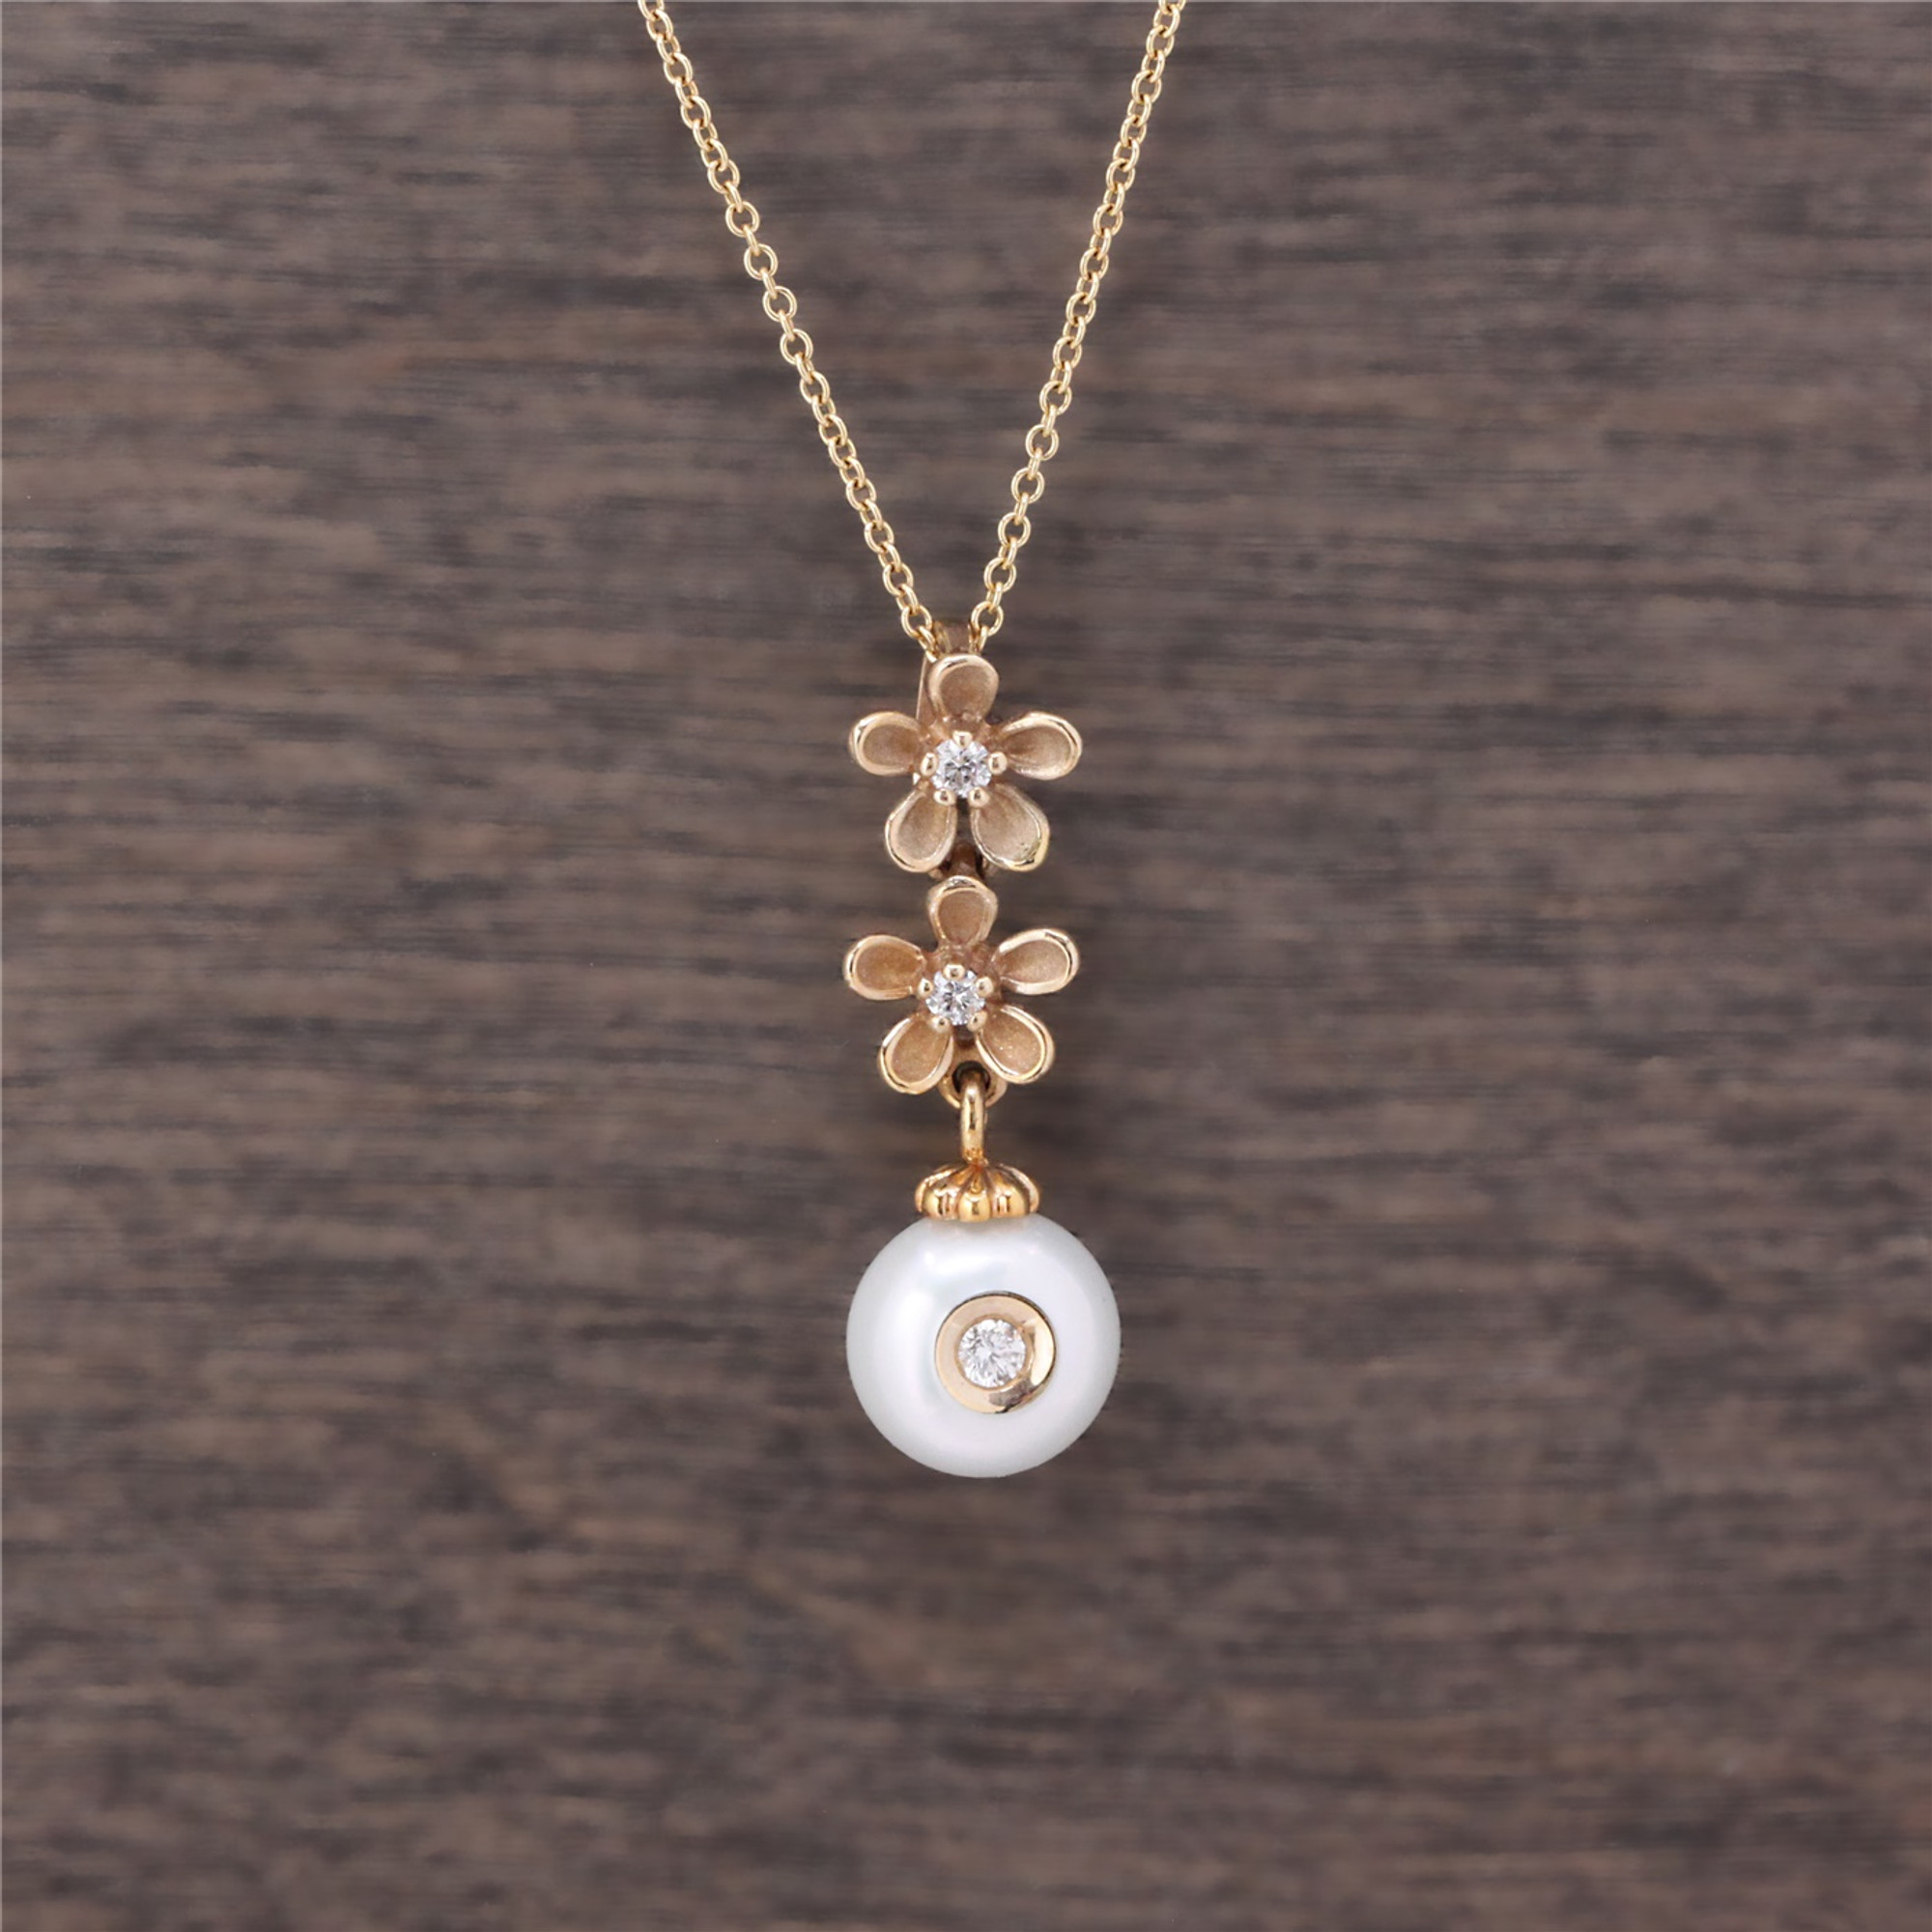 flower locket necklace